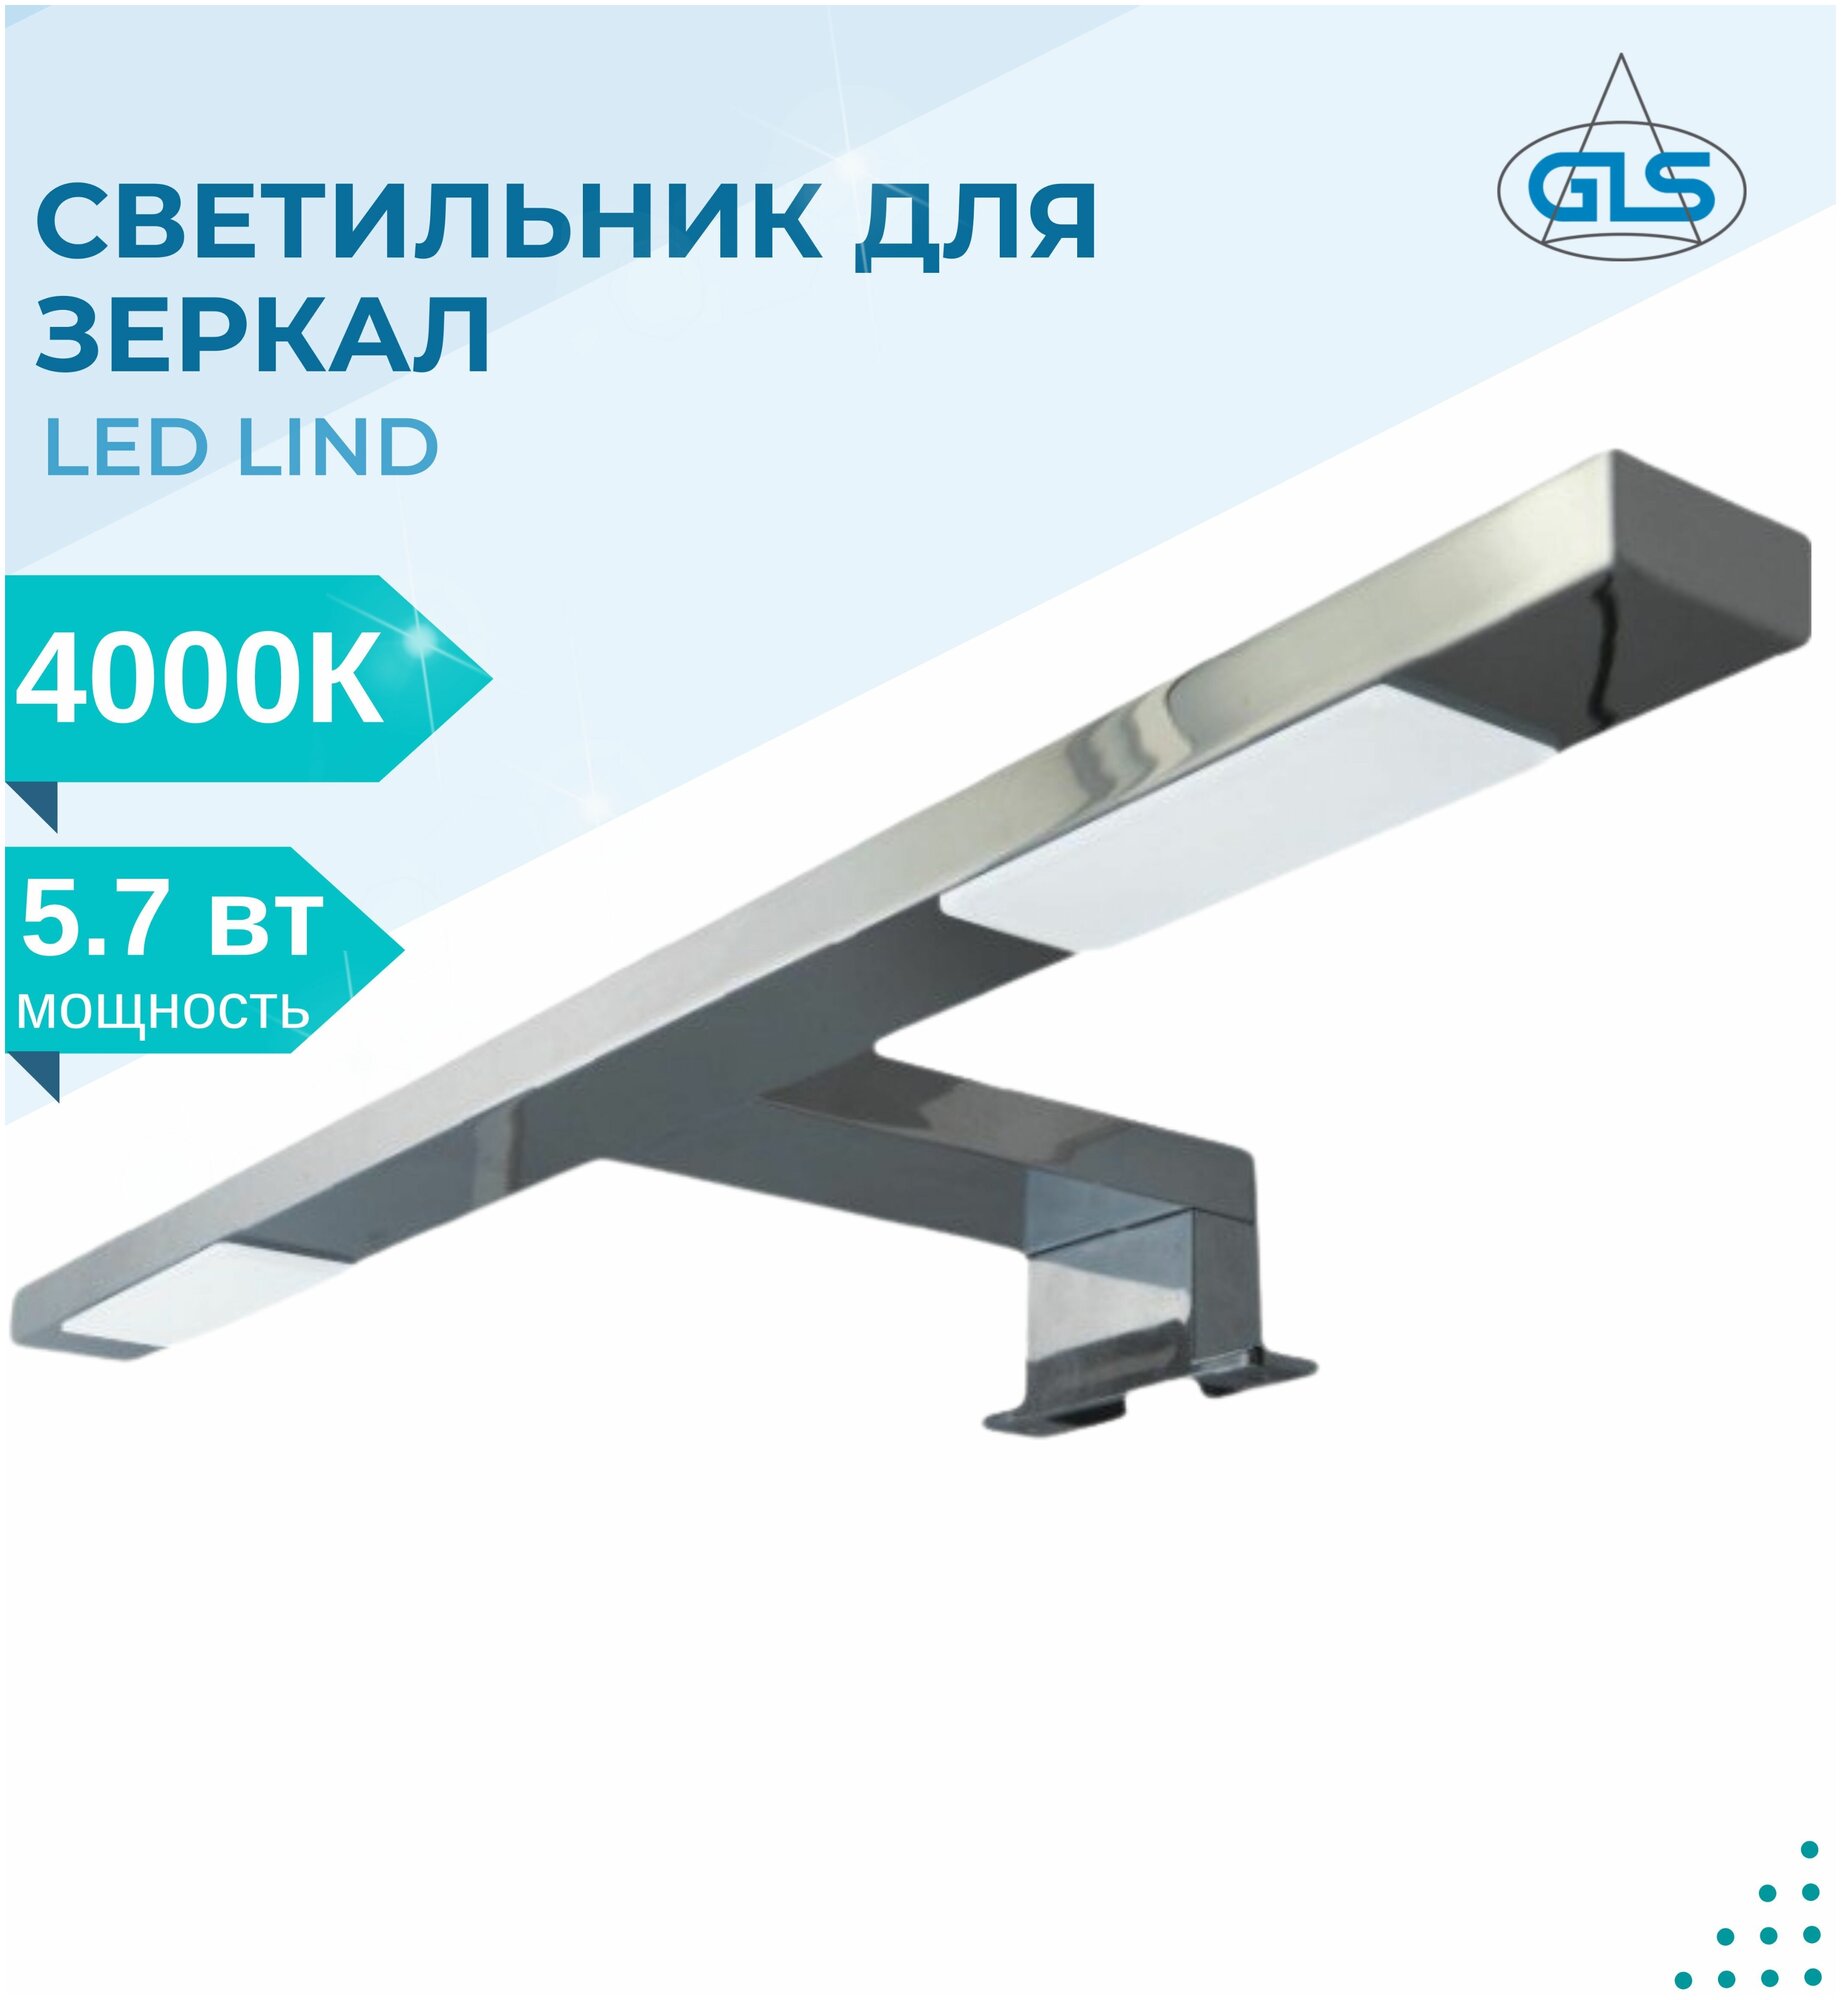 Светодиодный светильник LED Lind GLS IP44220V мебельный декоративный в ванную комнату подсветка для мебели картин лампа на зеркало